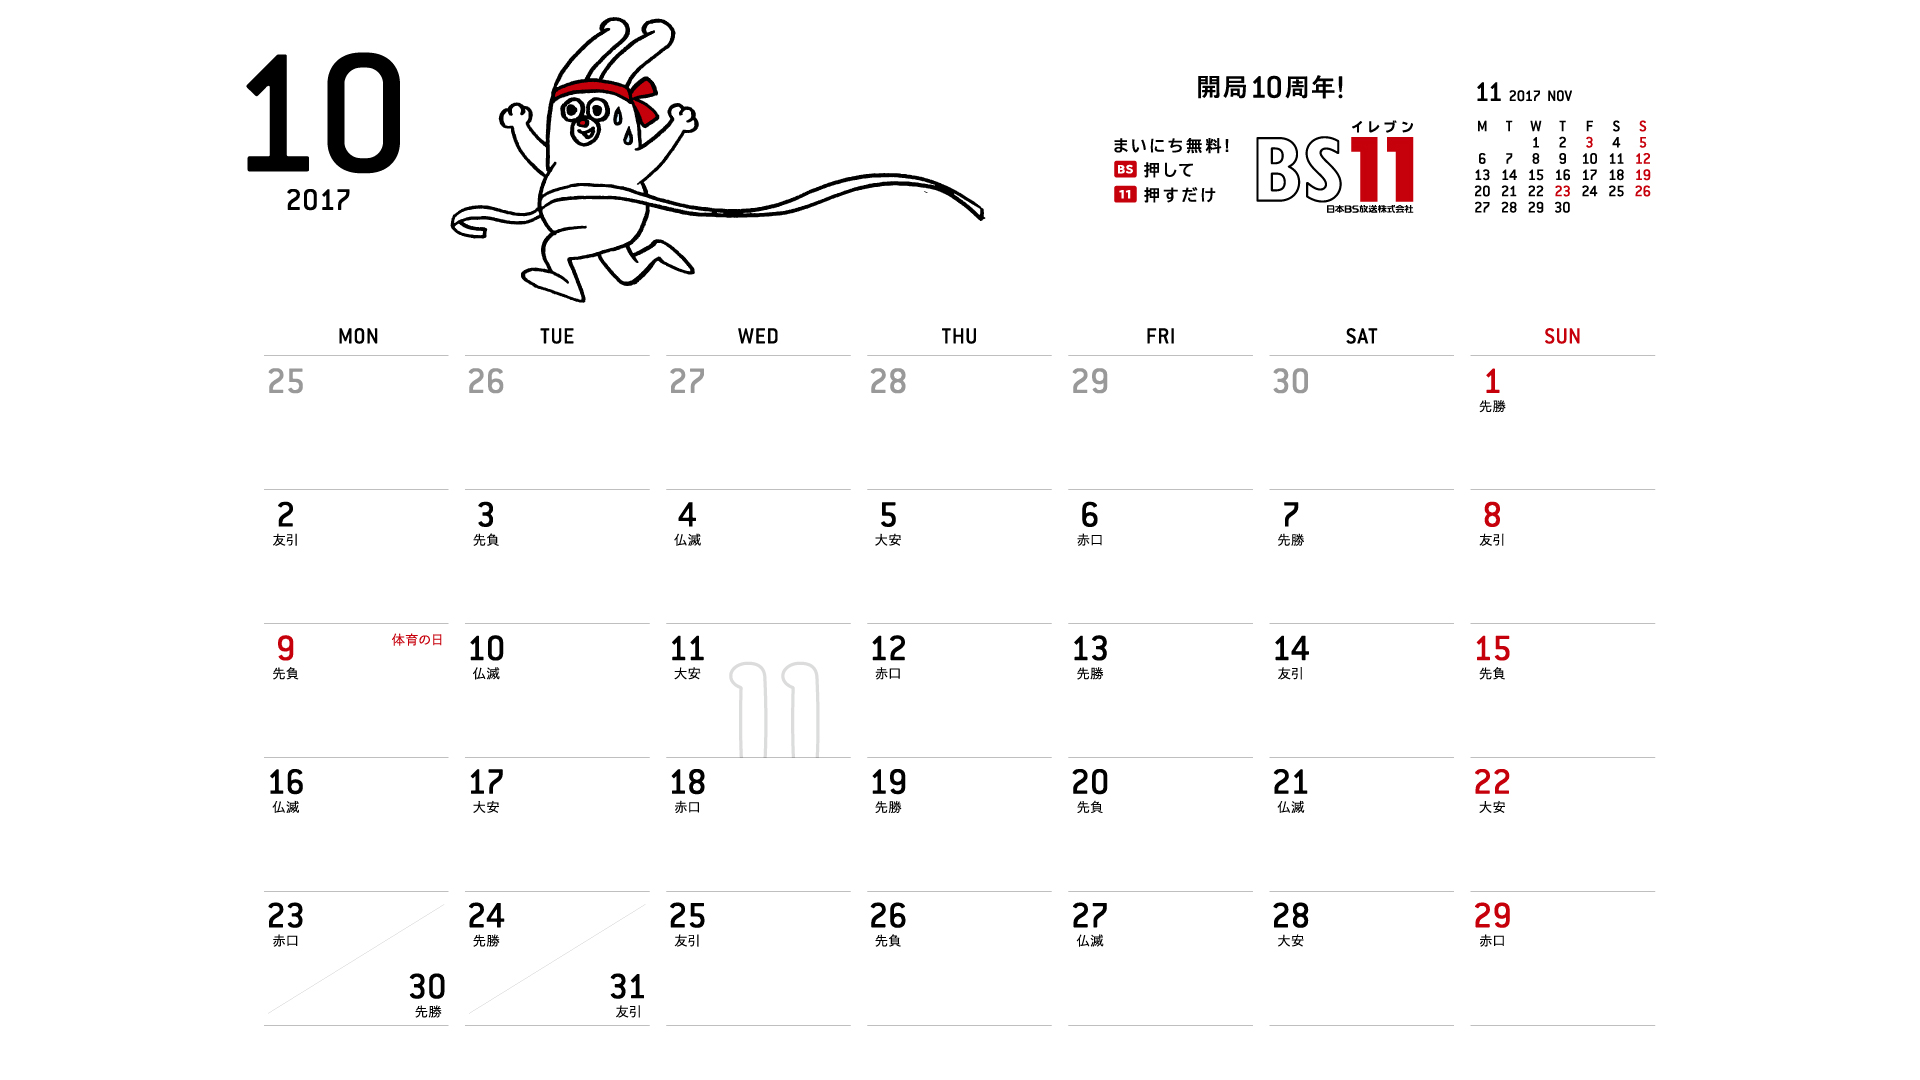 じゅういっちゃんのデジタルカレンダー17年10月 Bs11 イレブン いつでも無料放送